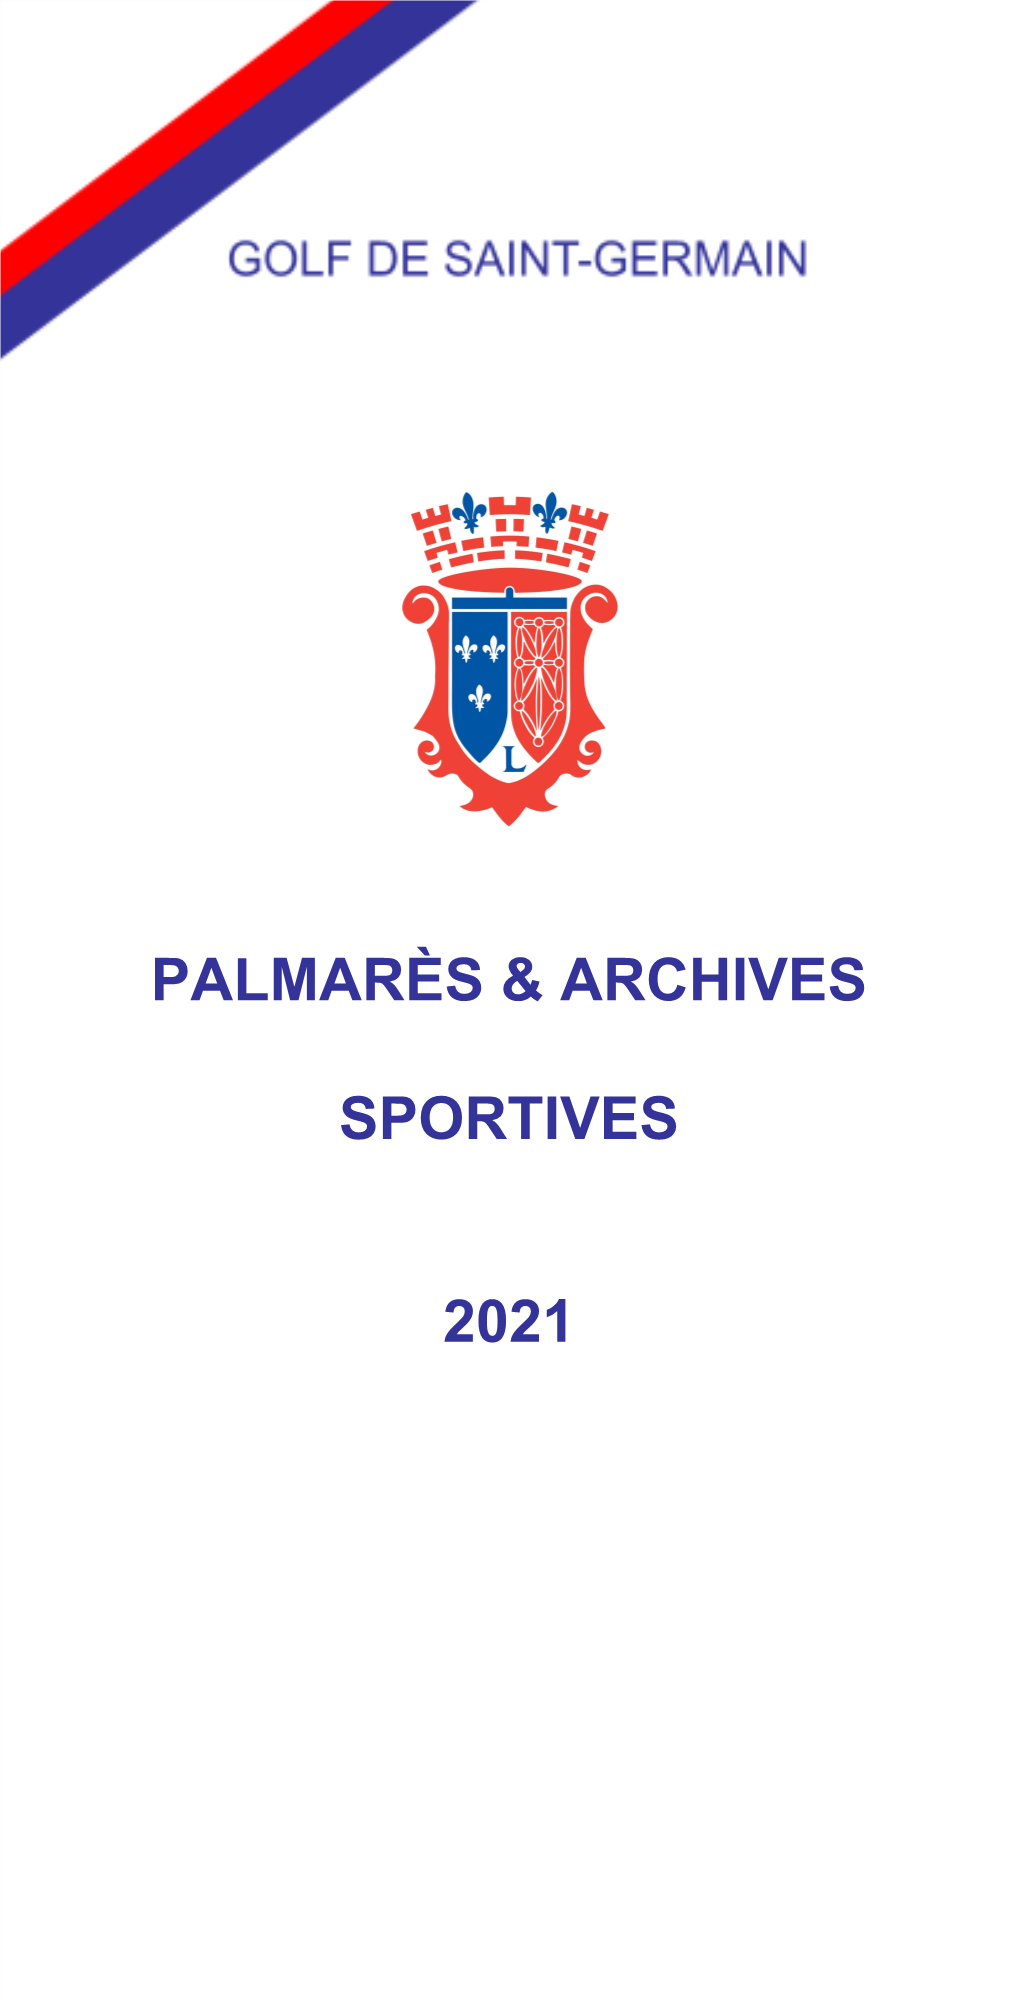 Palmarès & Archives Sportives 2021